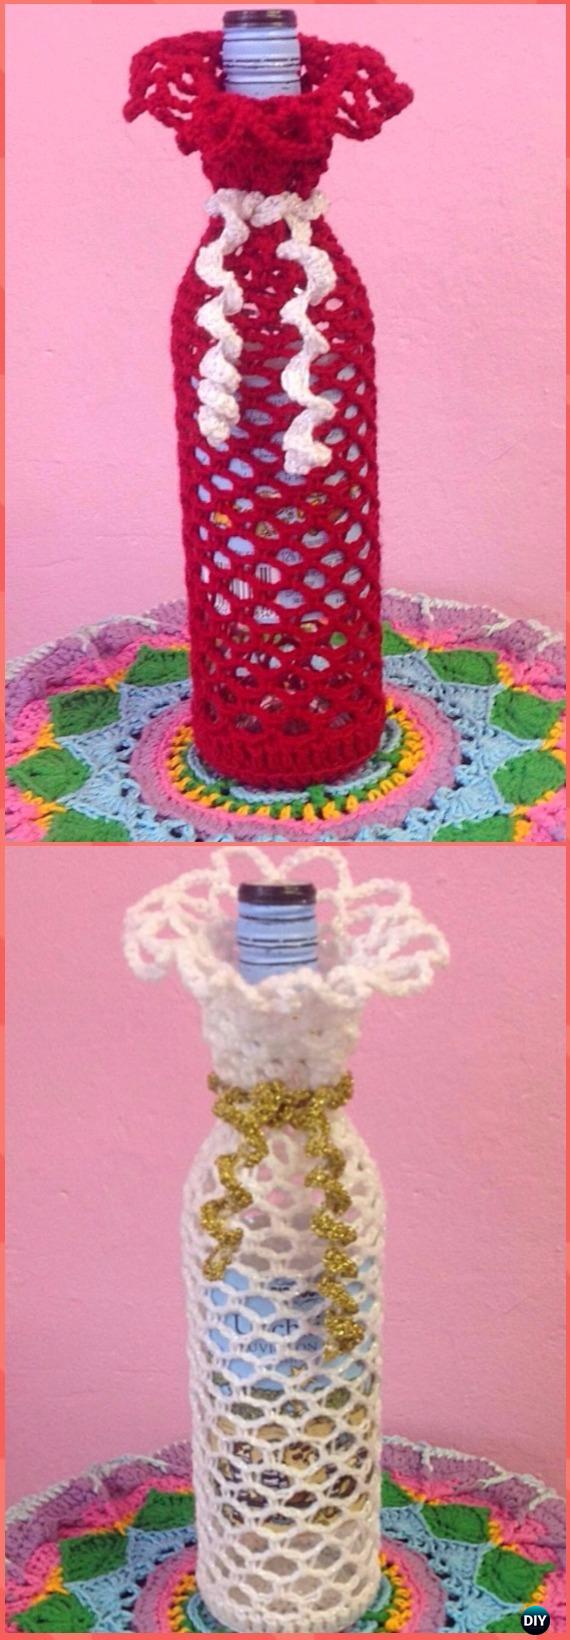 Crochet Wine Bottle Cosy Free Pattern - Crochet Wine Bottle Cozy Bag & Sack Free Patterns